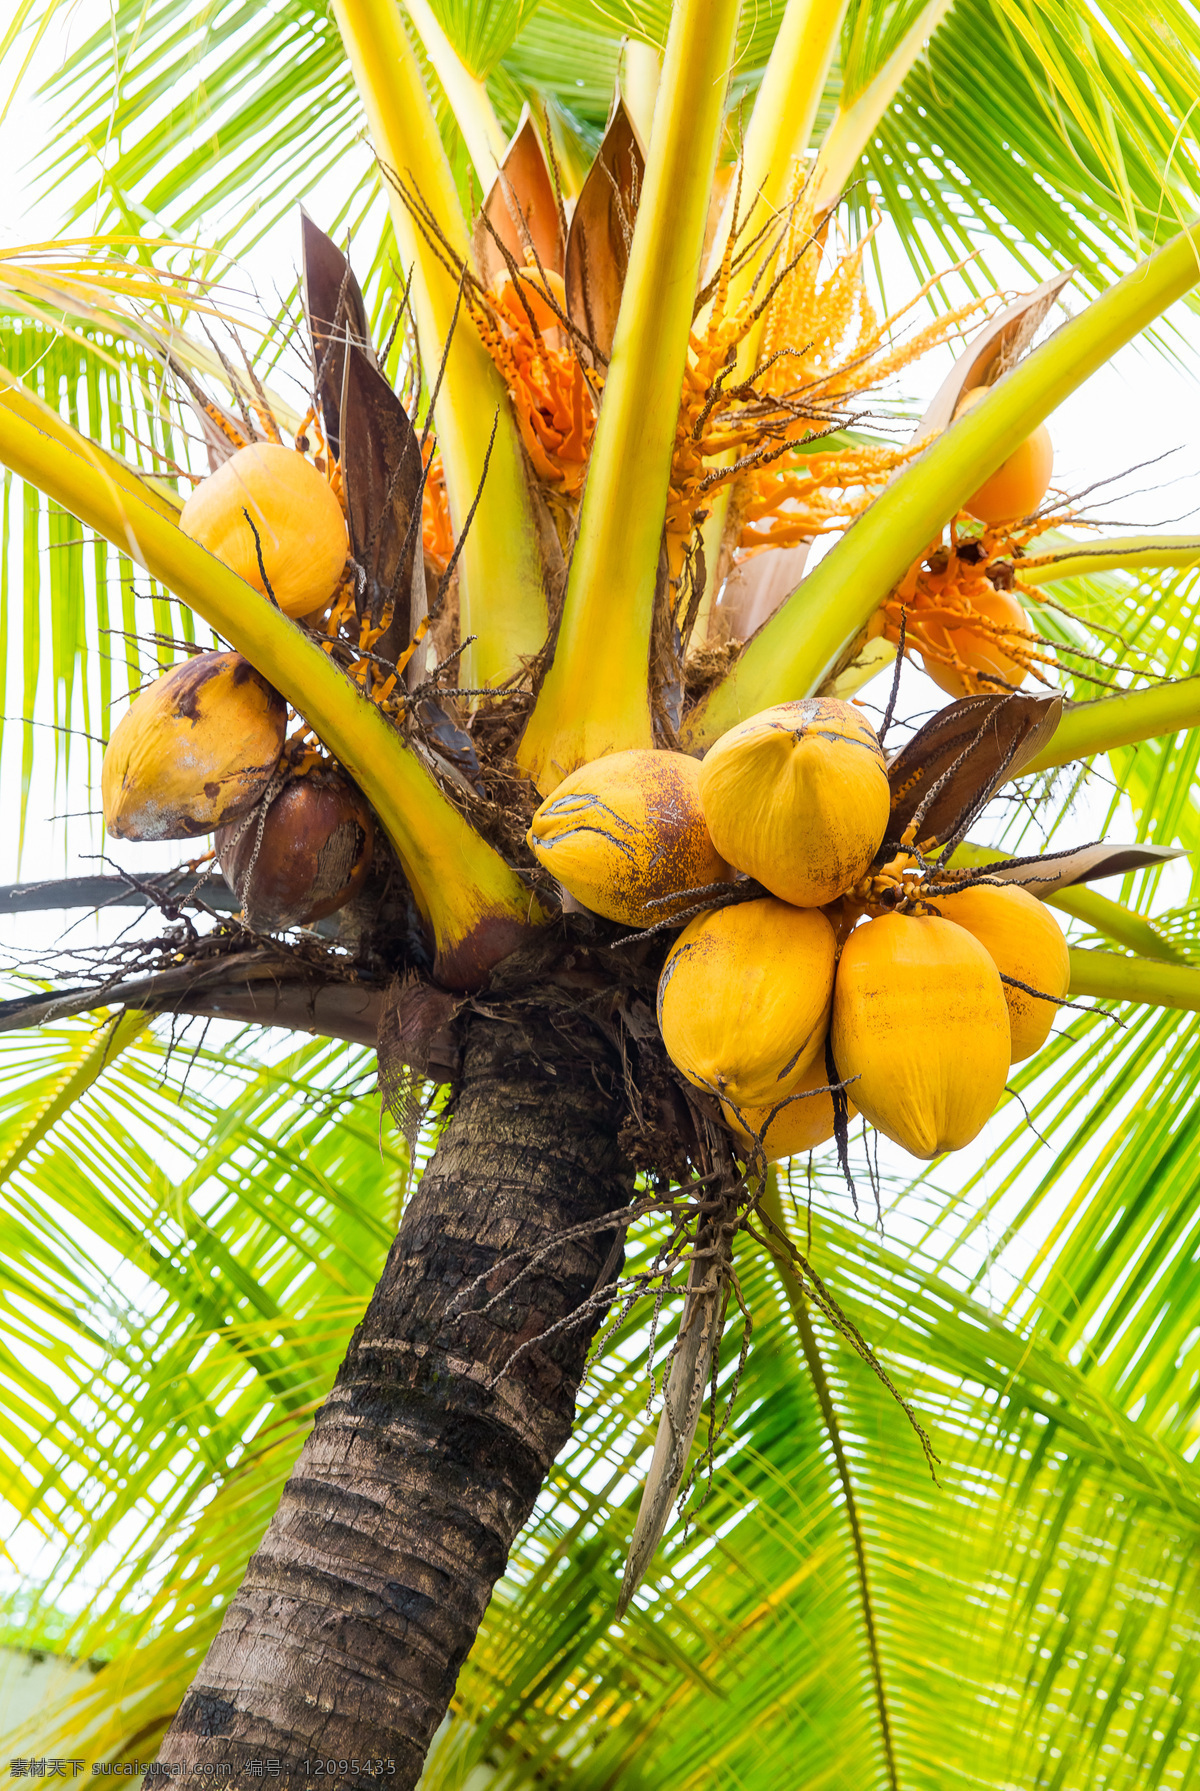 椰树 上 果实 椰果 椰子树 树木摄影 植物摄影 花草树木 生物世界